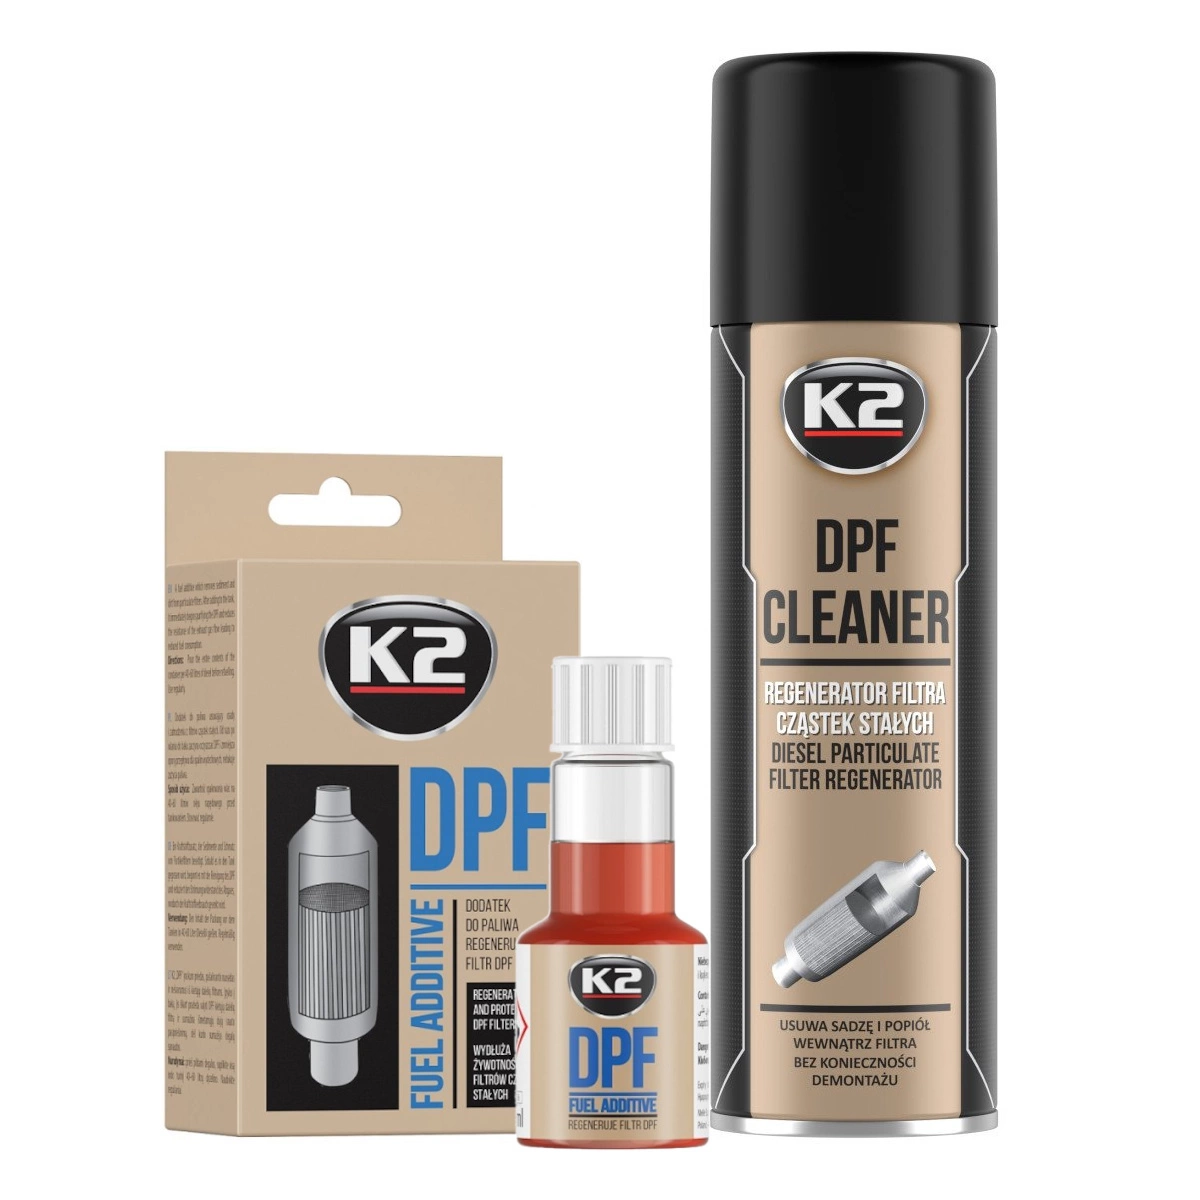 K2 - FAP cleaner - DPF CLEANER 500 ML